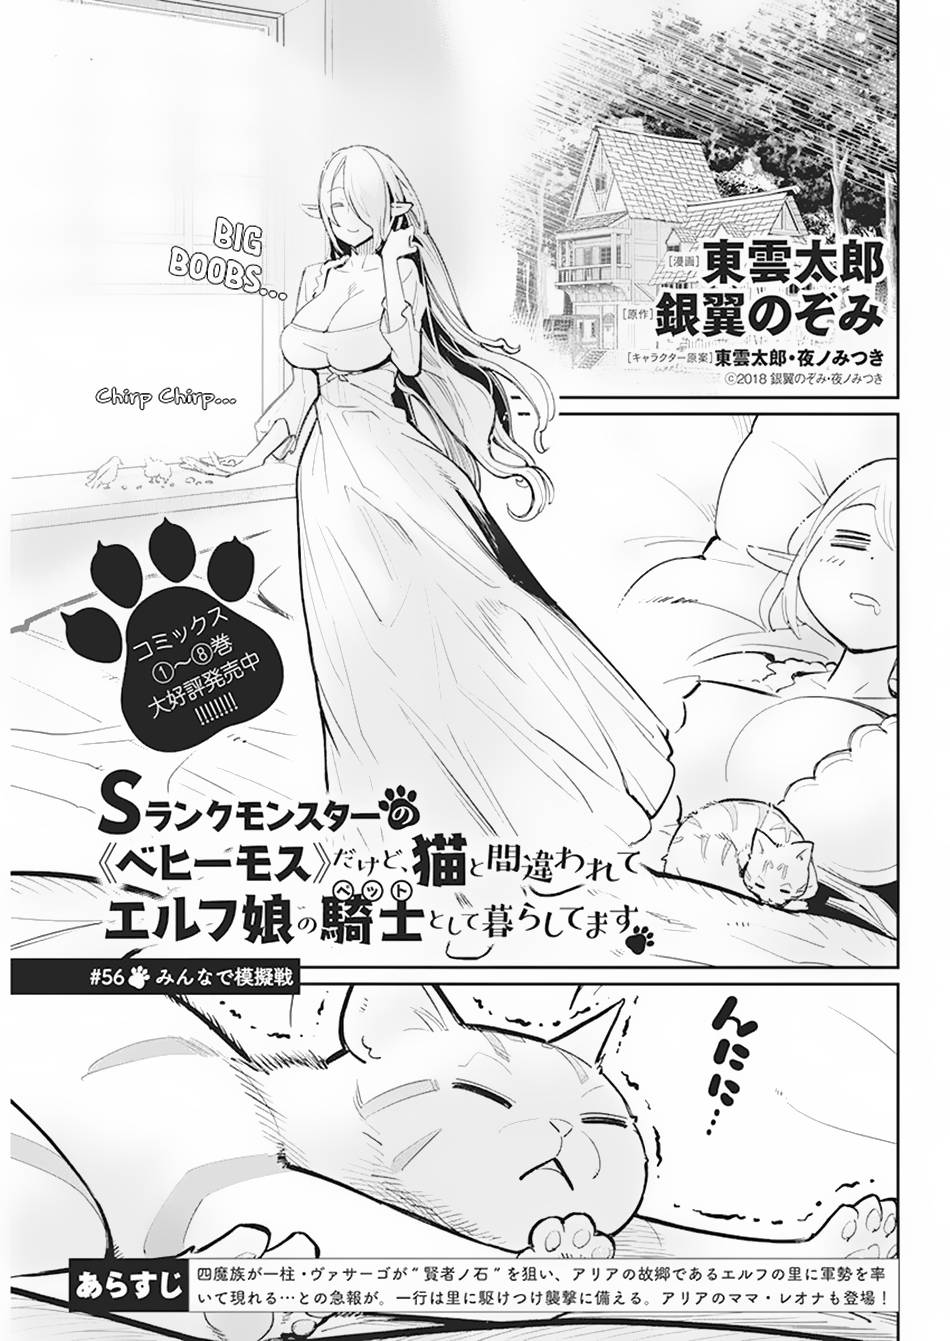 S-Rank Monster no Behemoth Dakedo, Neko to Machigawarete Erufu Musume no Kishi (Pet) Toshite Kurashitemasu - chapter 56 - #2